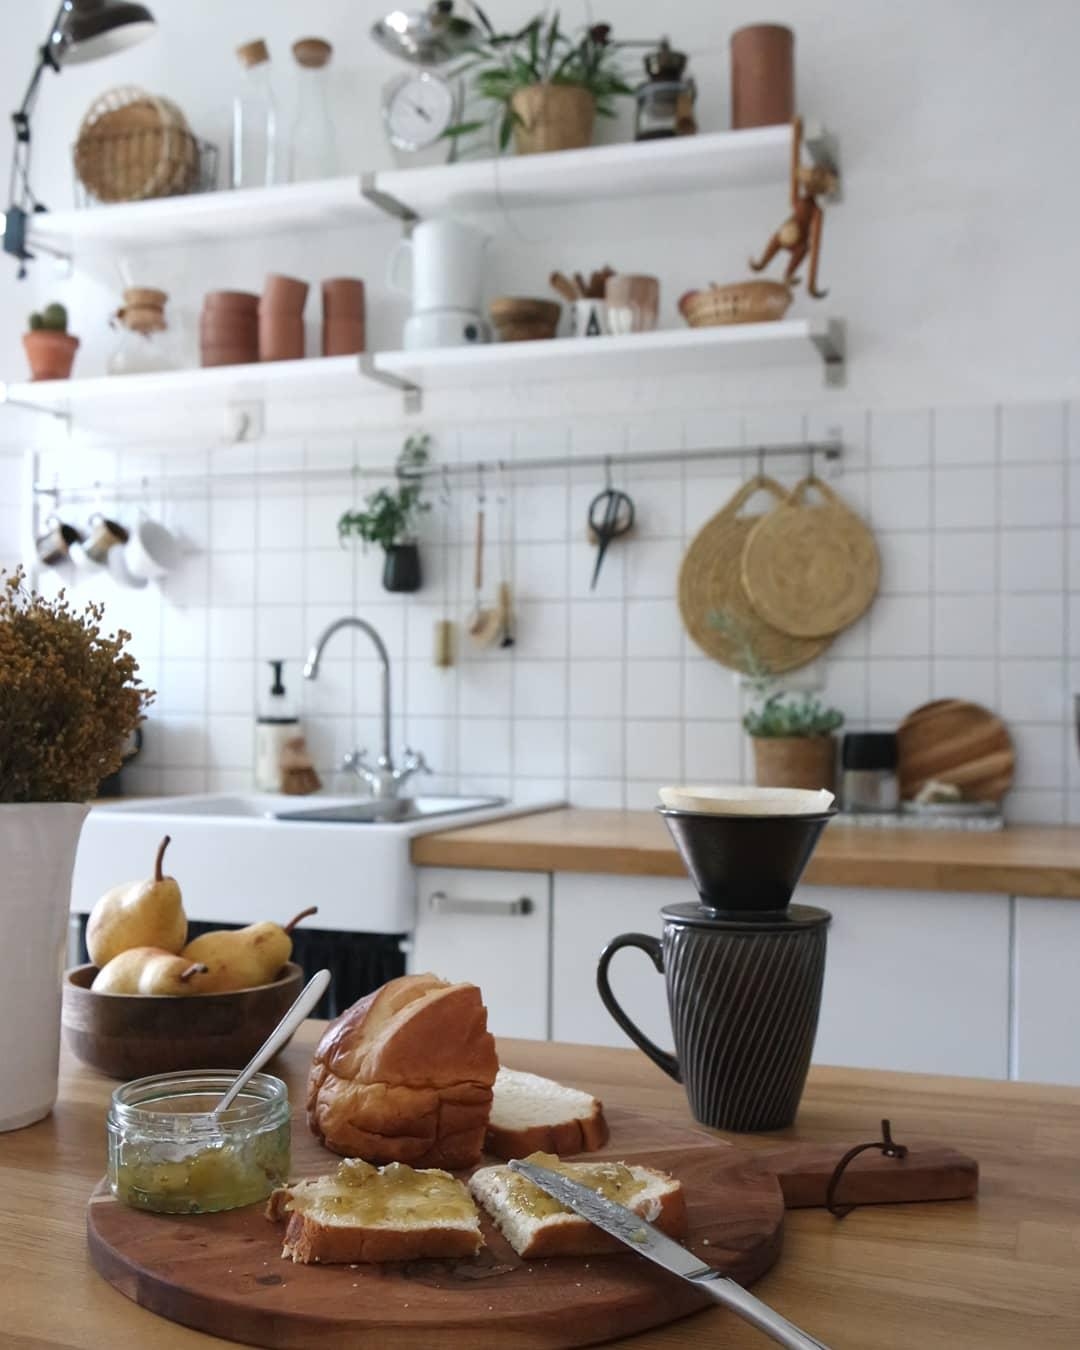 #Sonntags #Frühstück #altbau #küche #kitchen #interior #altbauliebe 